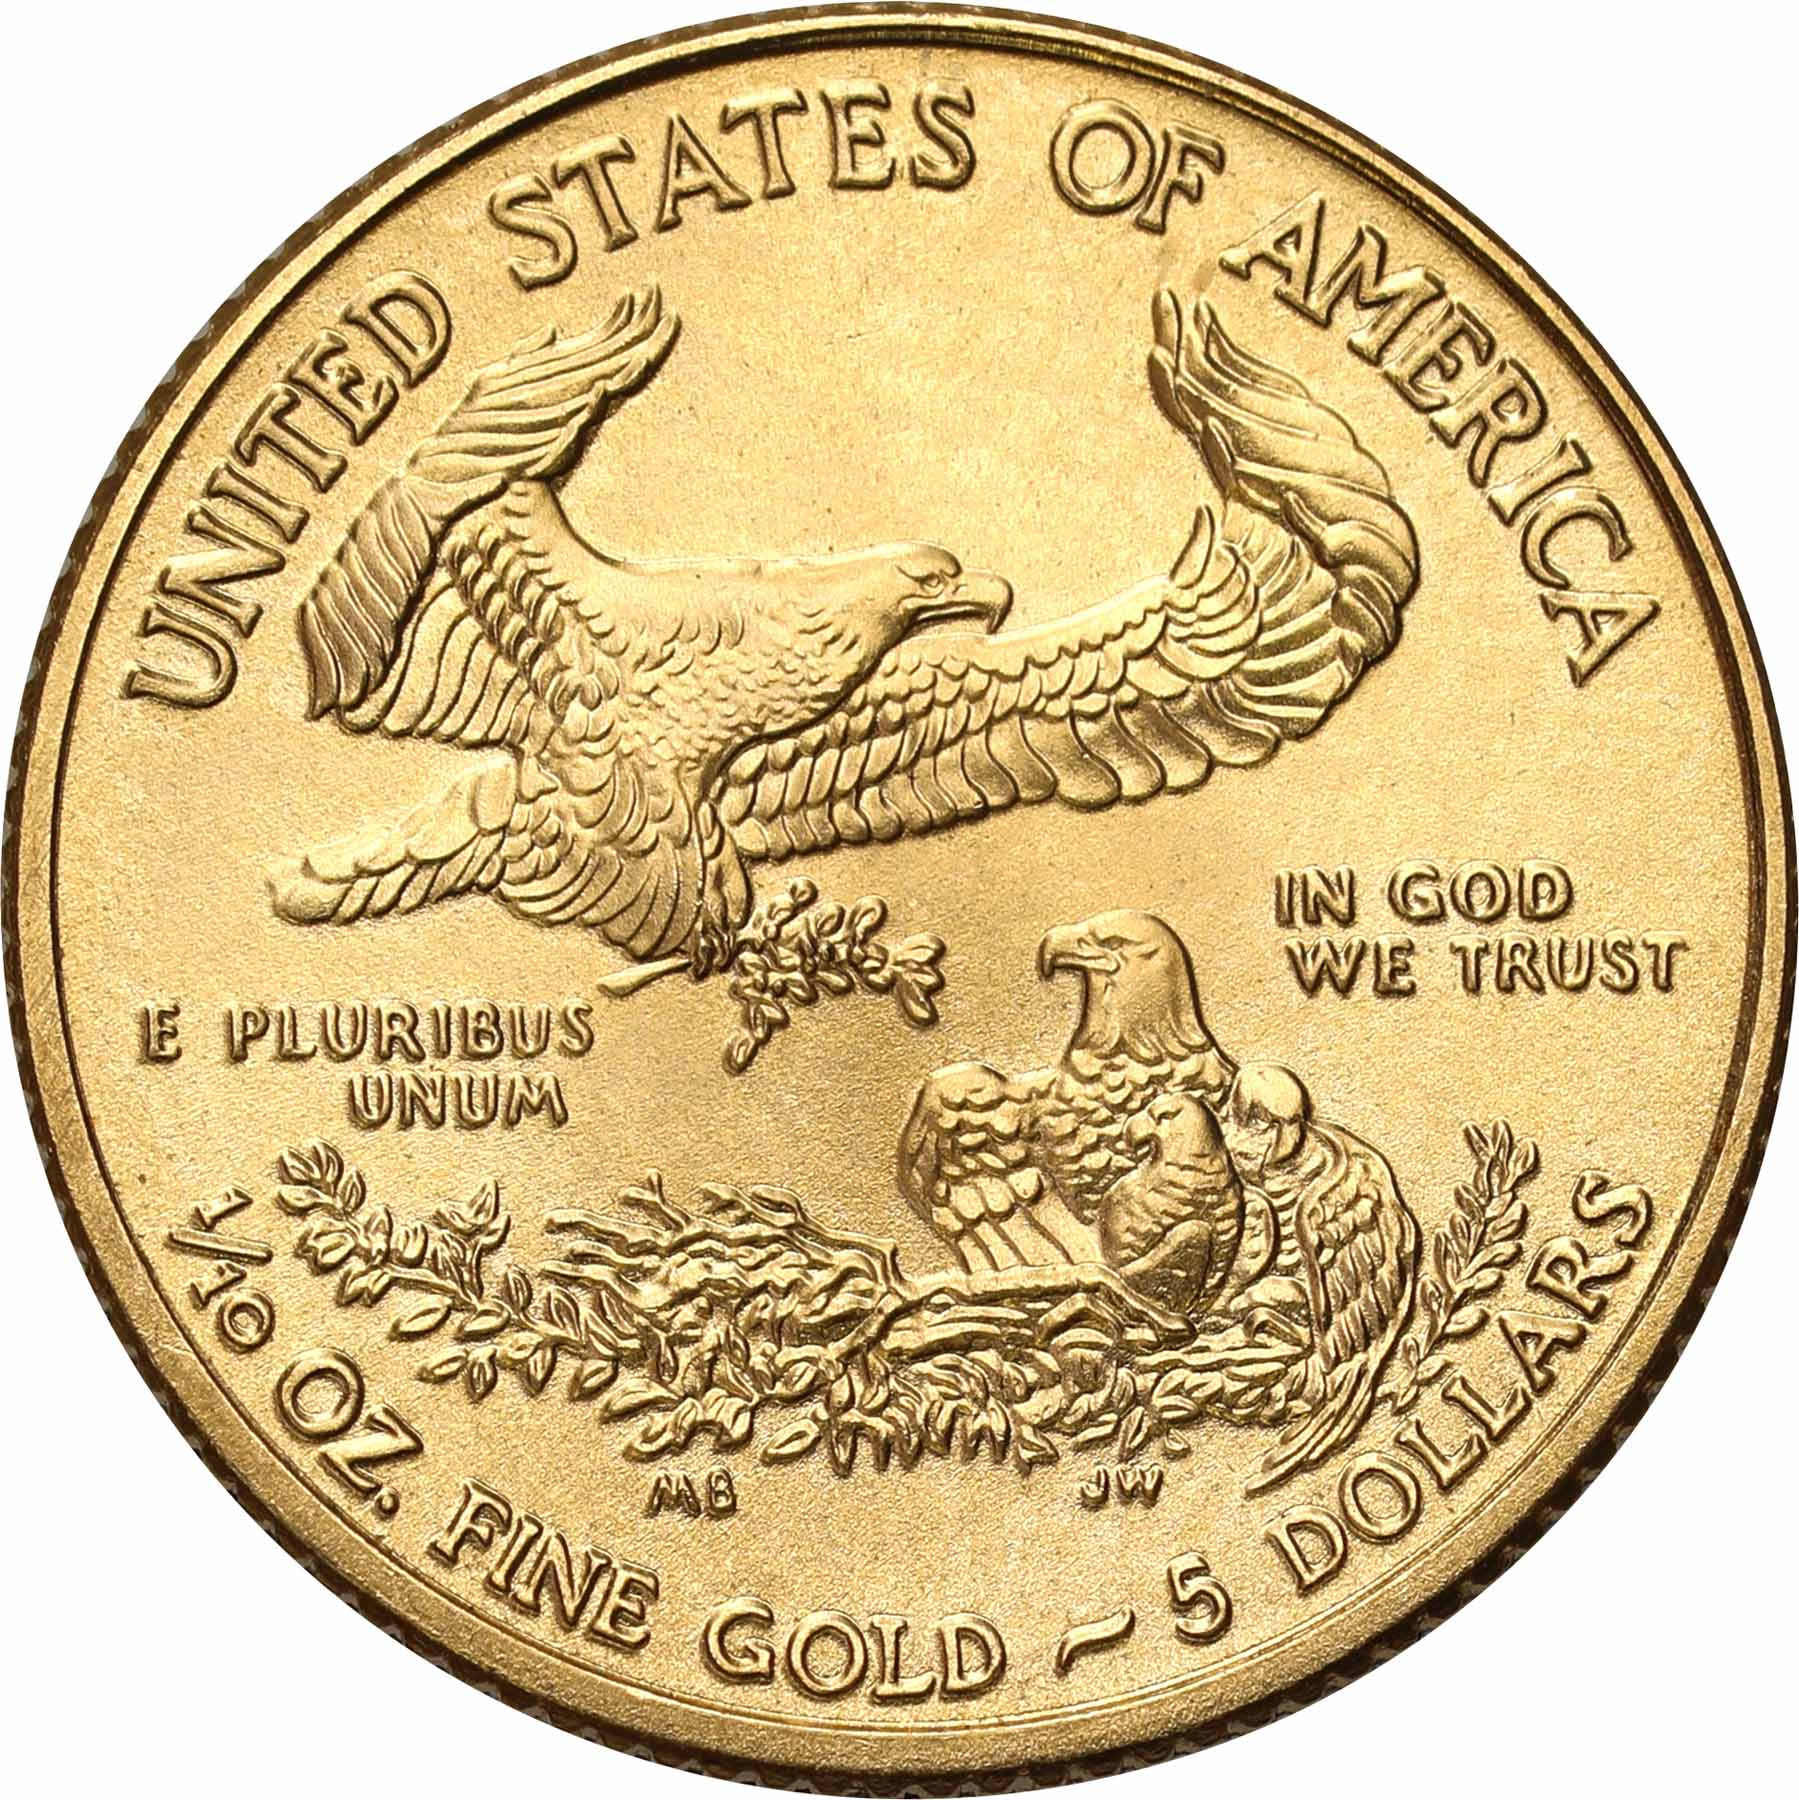 USA. Złote 5 $ dolarów 2011 Orzeł (Eagle) - 1/10 uncji złota